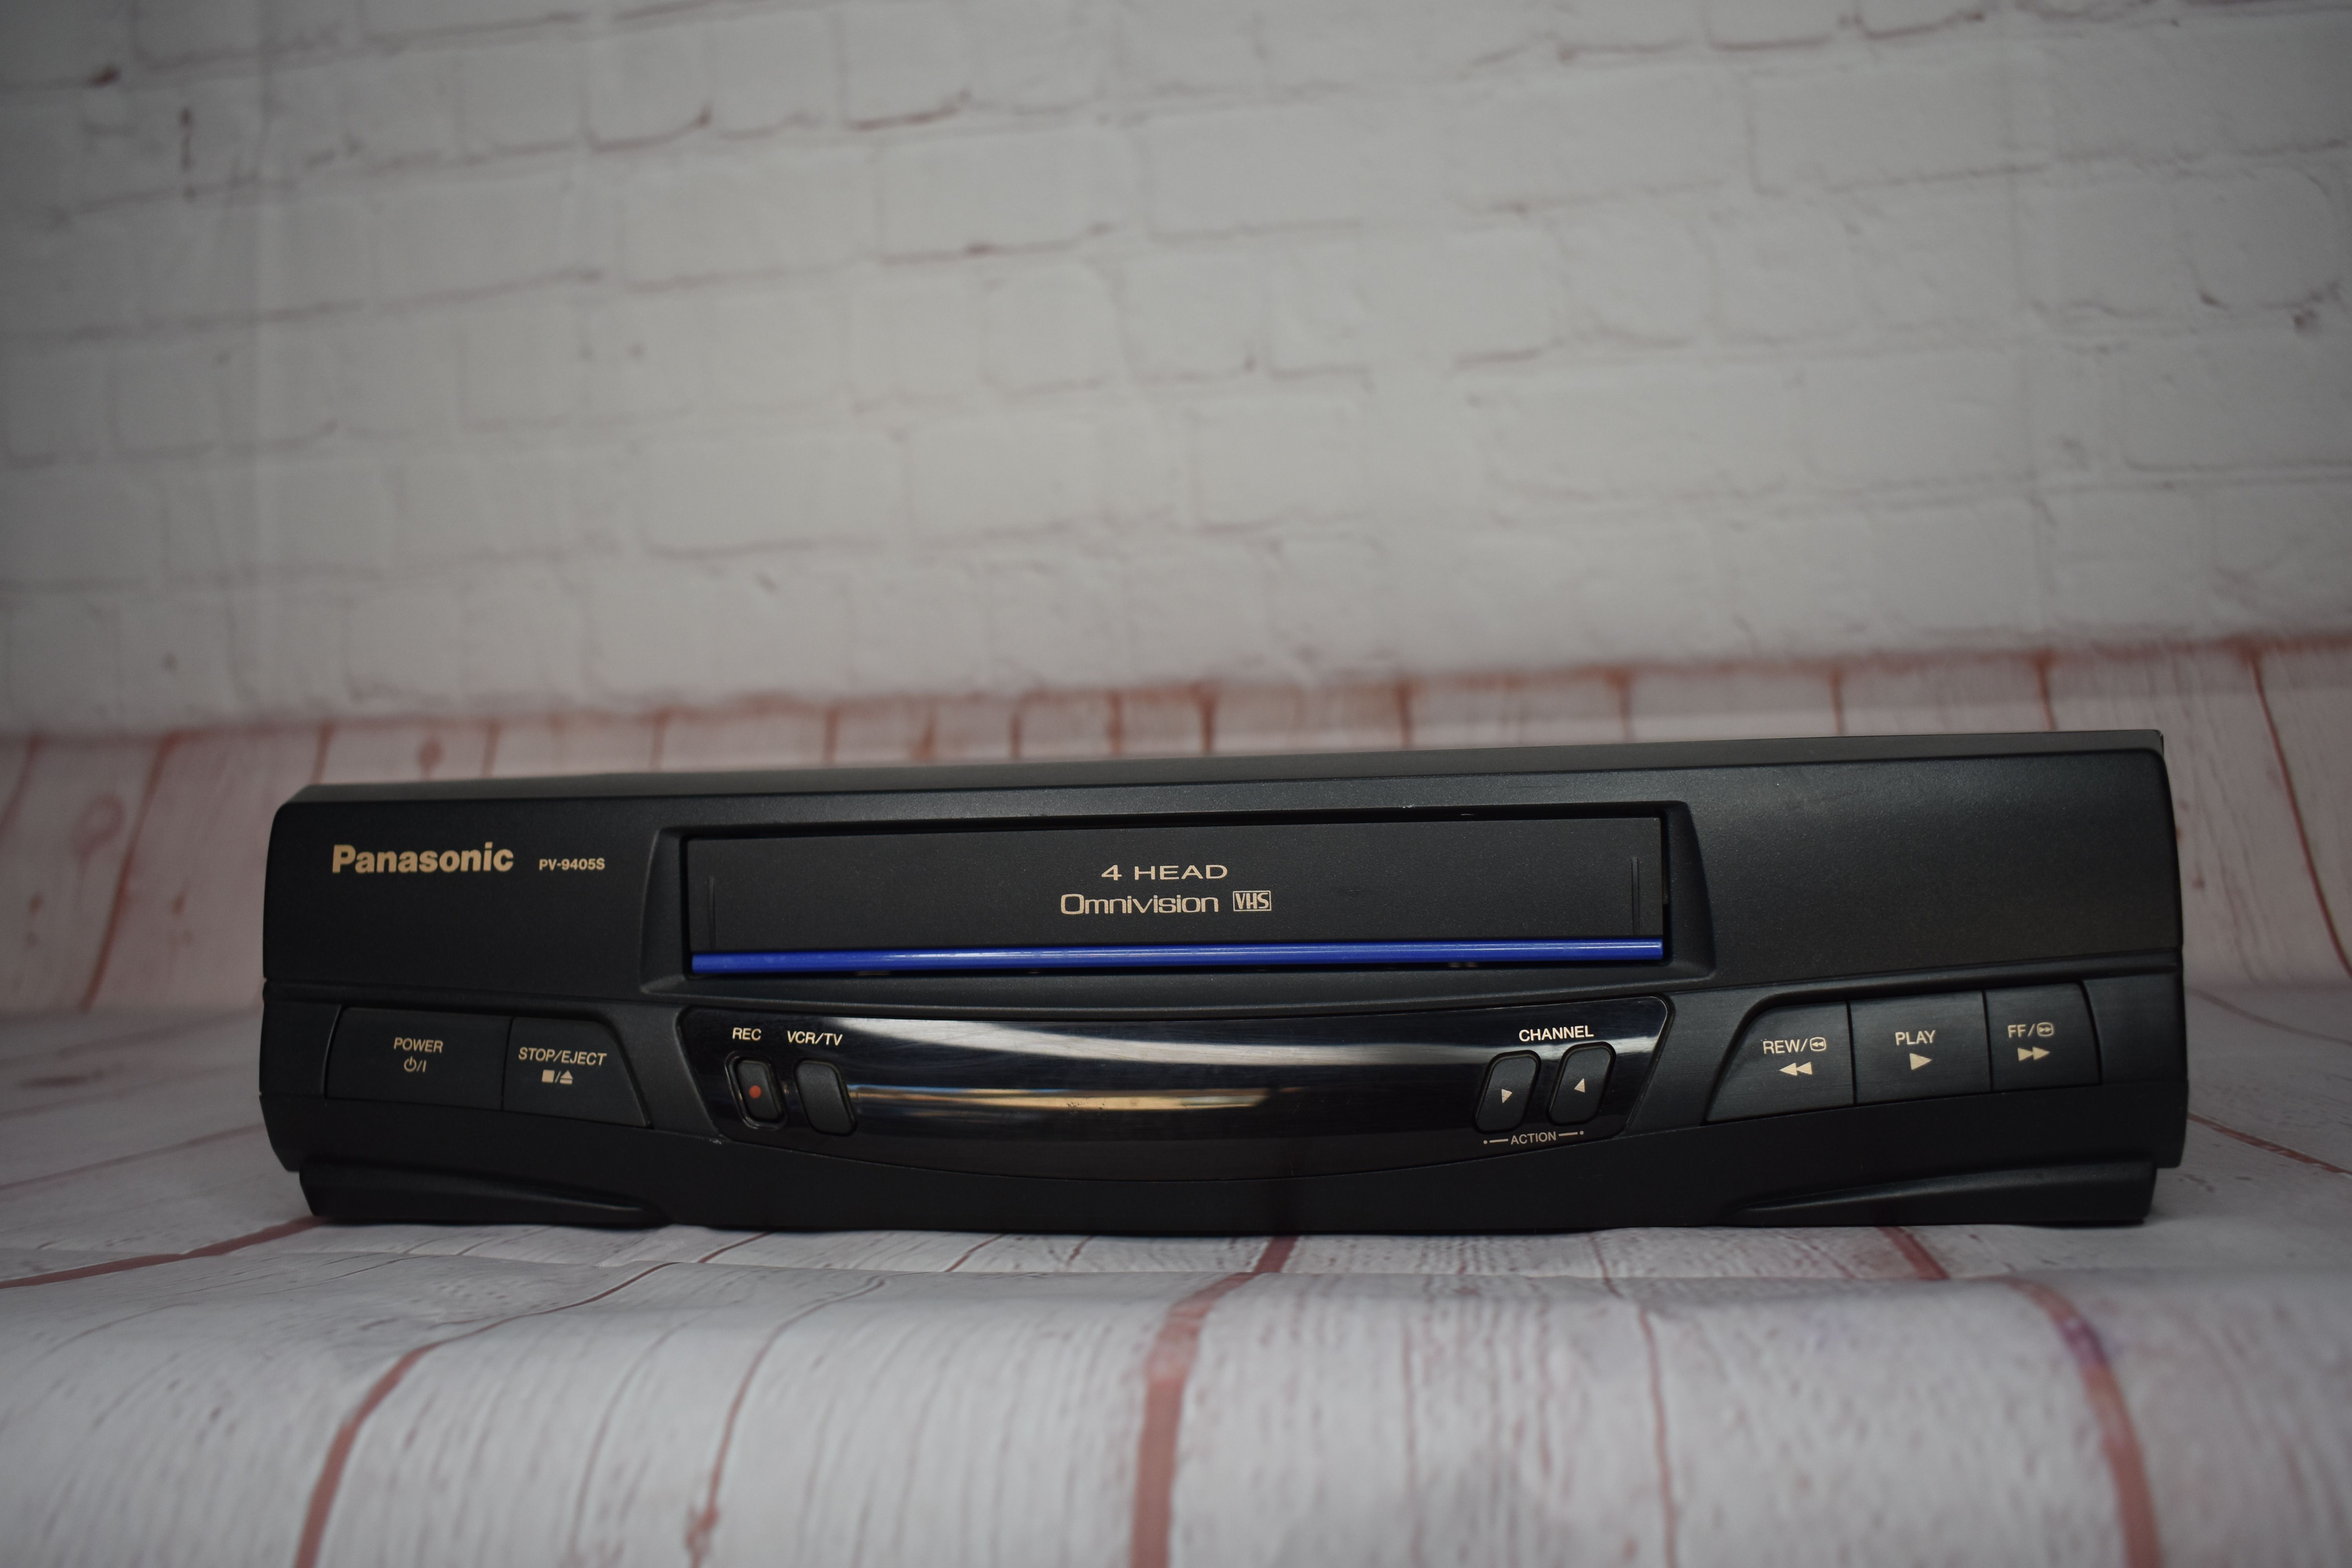 Panasonic Omnivision 4 Head Hi-Fi Stereo VCR PV-94053 - No Remote Included